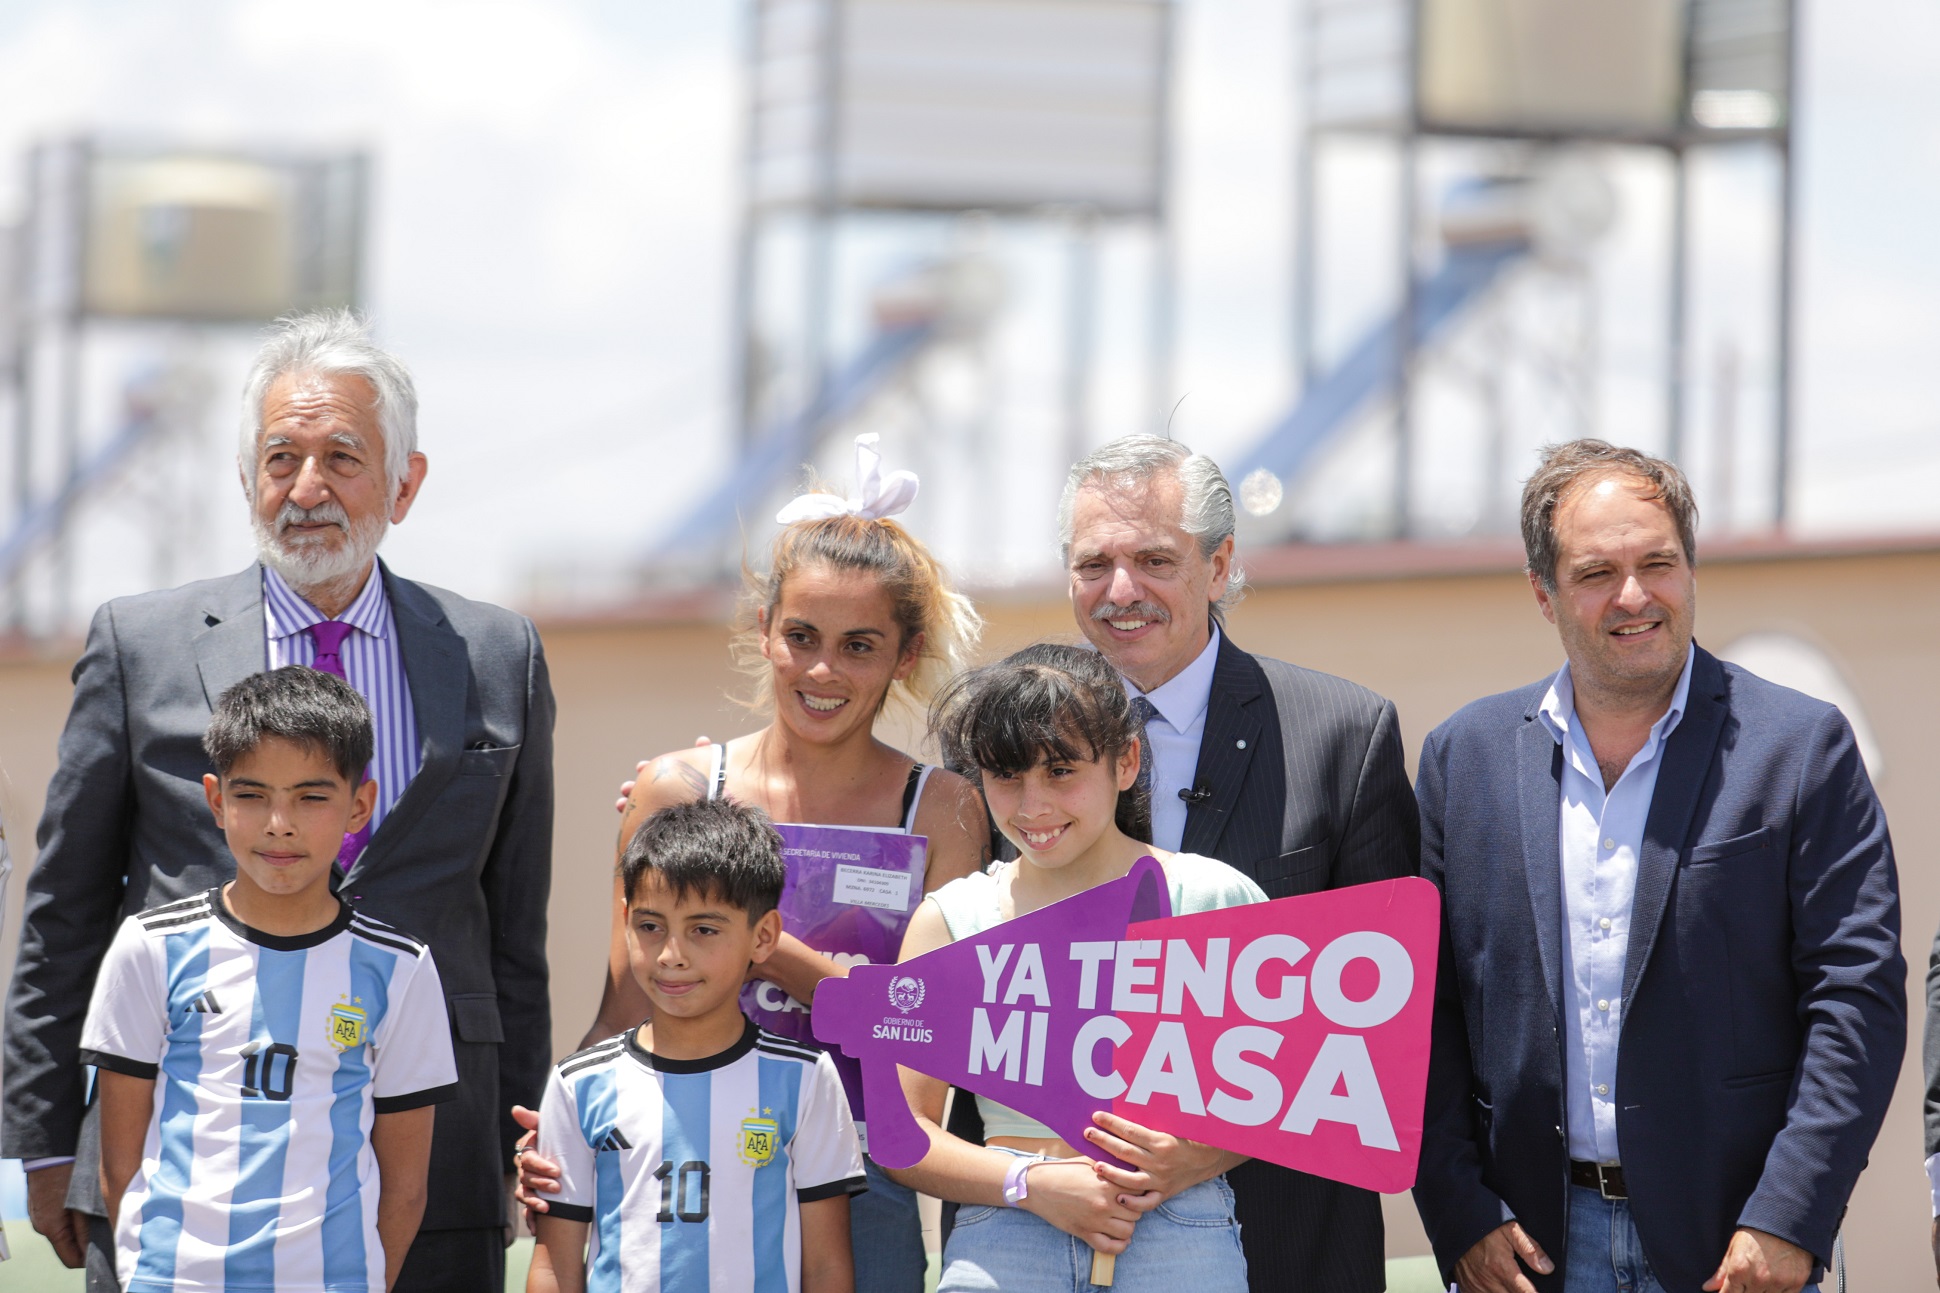 La Argentina necesita que nos unamos en grandes proyectos dijo el presidente al entregar la vivienda 70.000 en San Luis